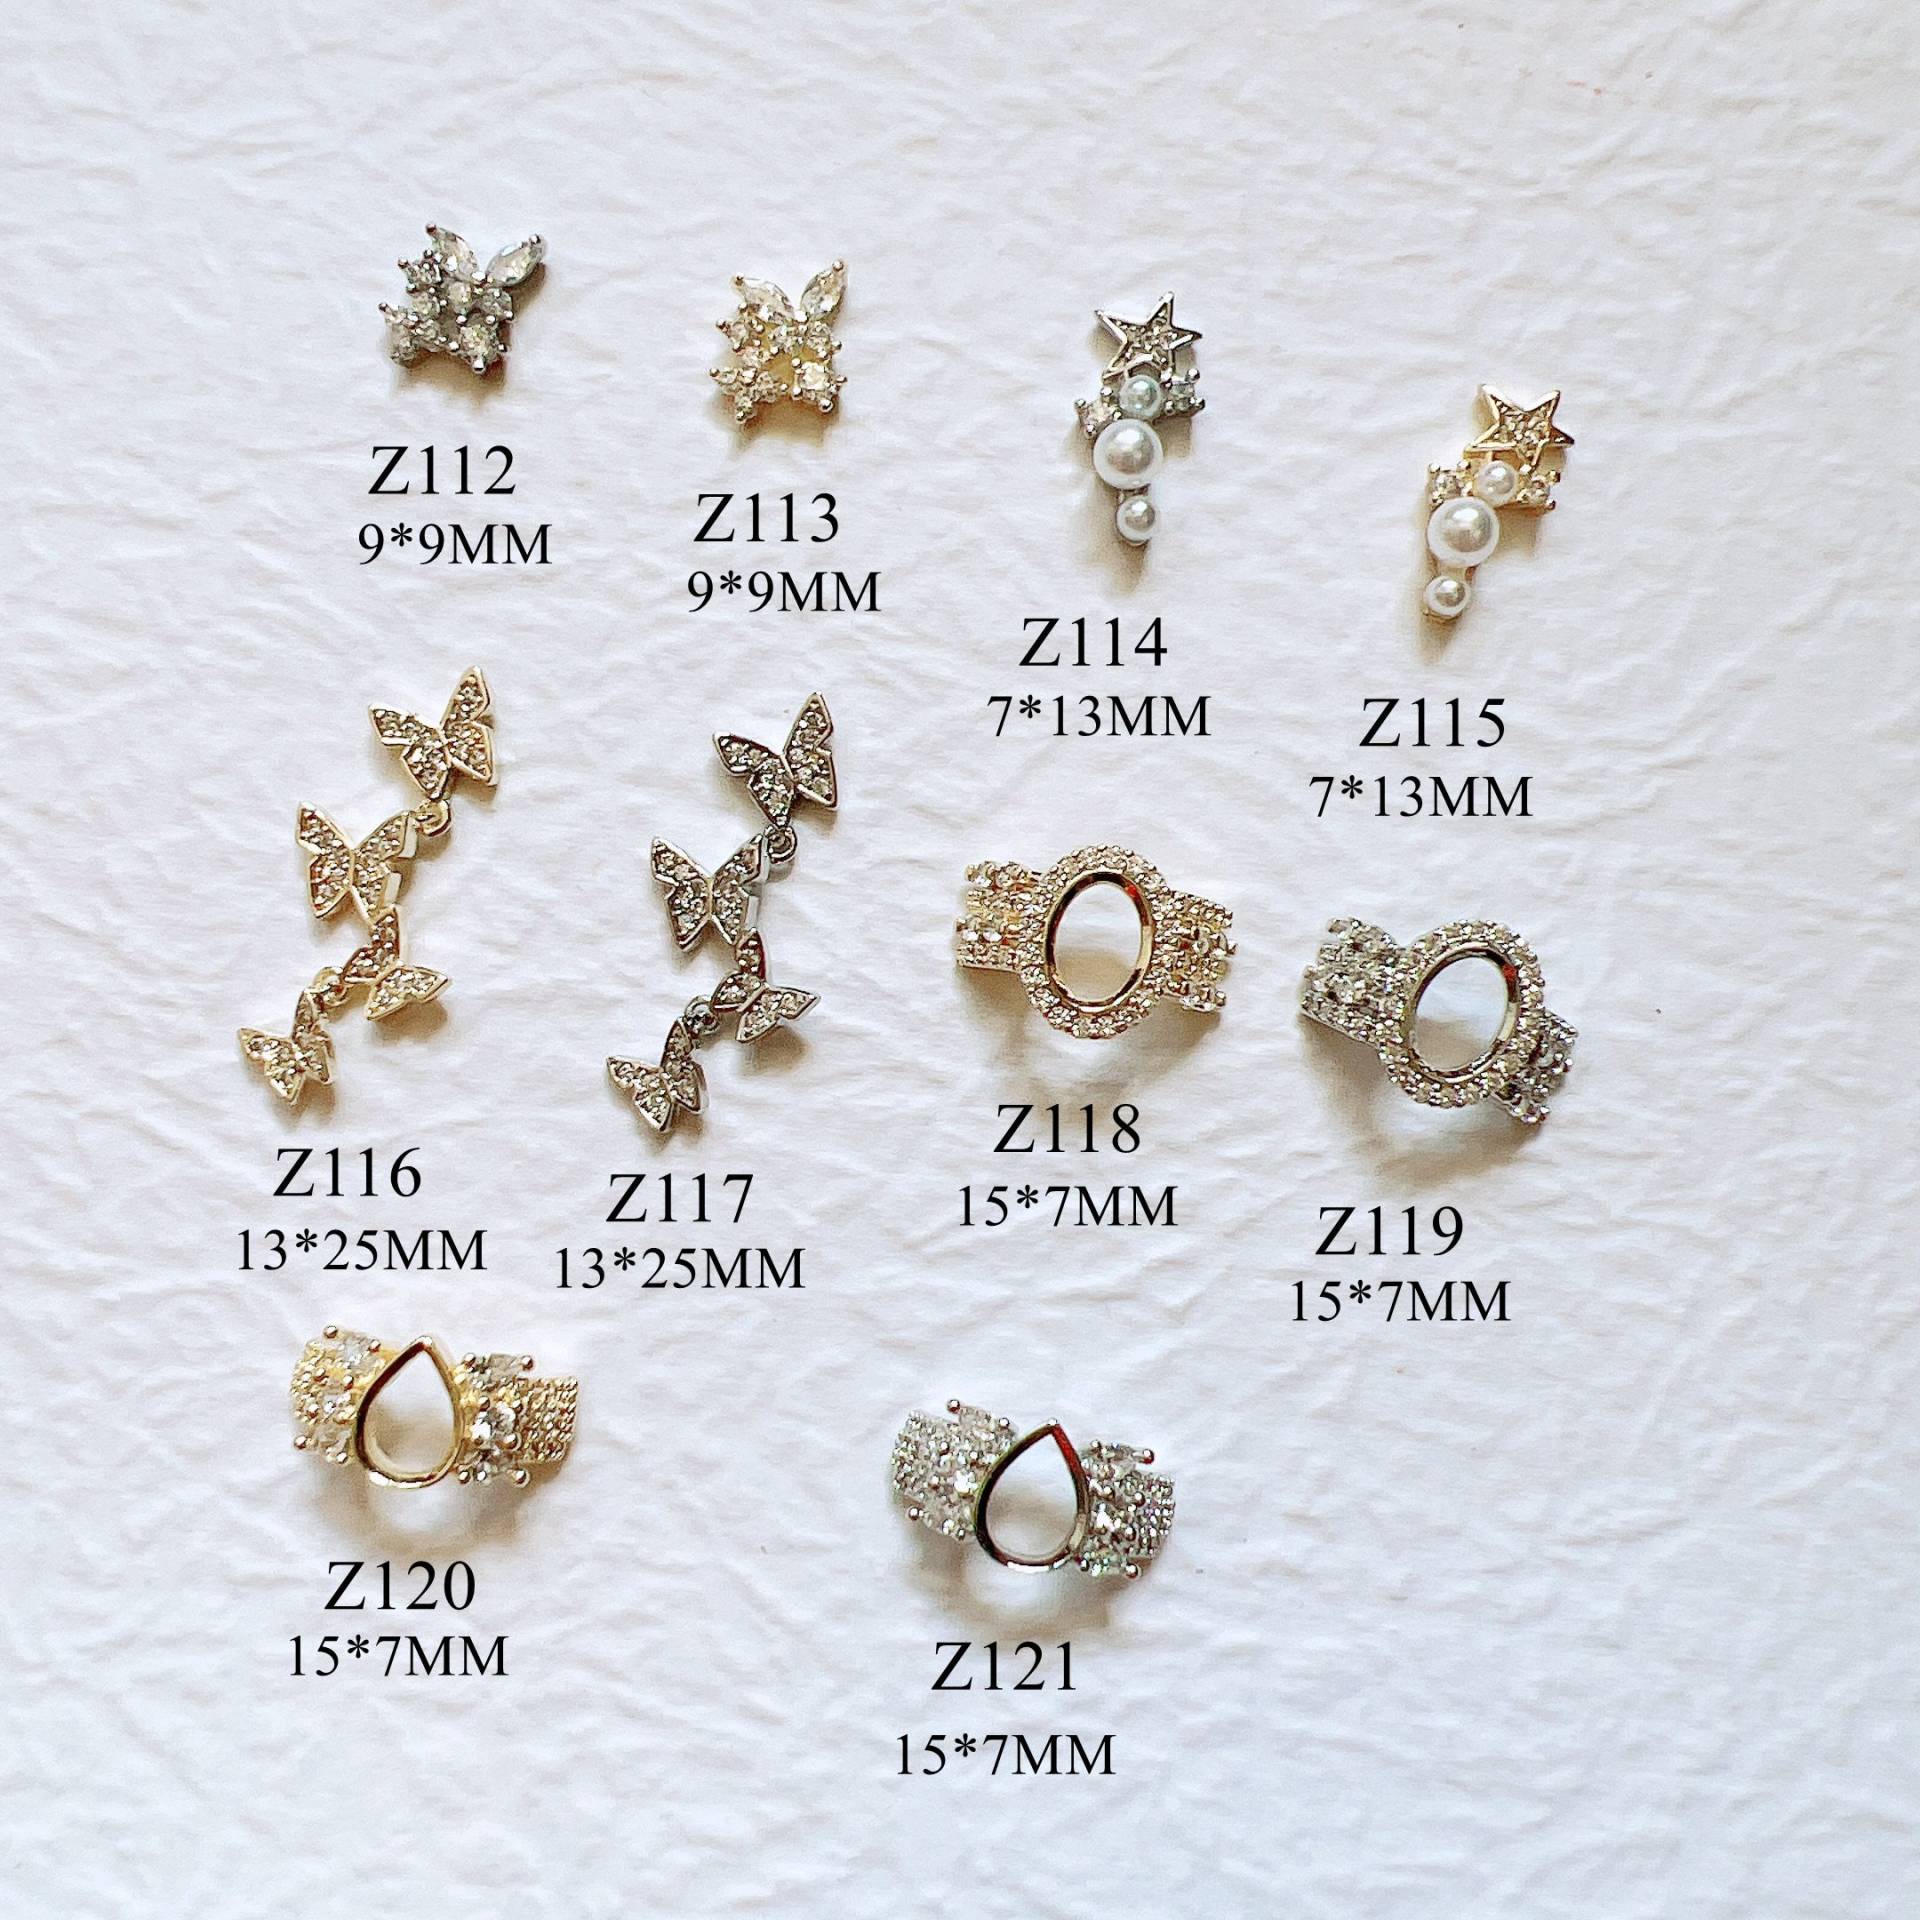 1Stk Luxus Gold Zirkon Stein Verschiedene Formen Metall Charms Deko Schmetterling Stern Nail Art Z112-121 von NailAngel2019